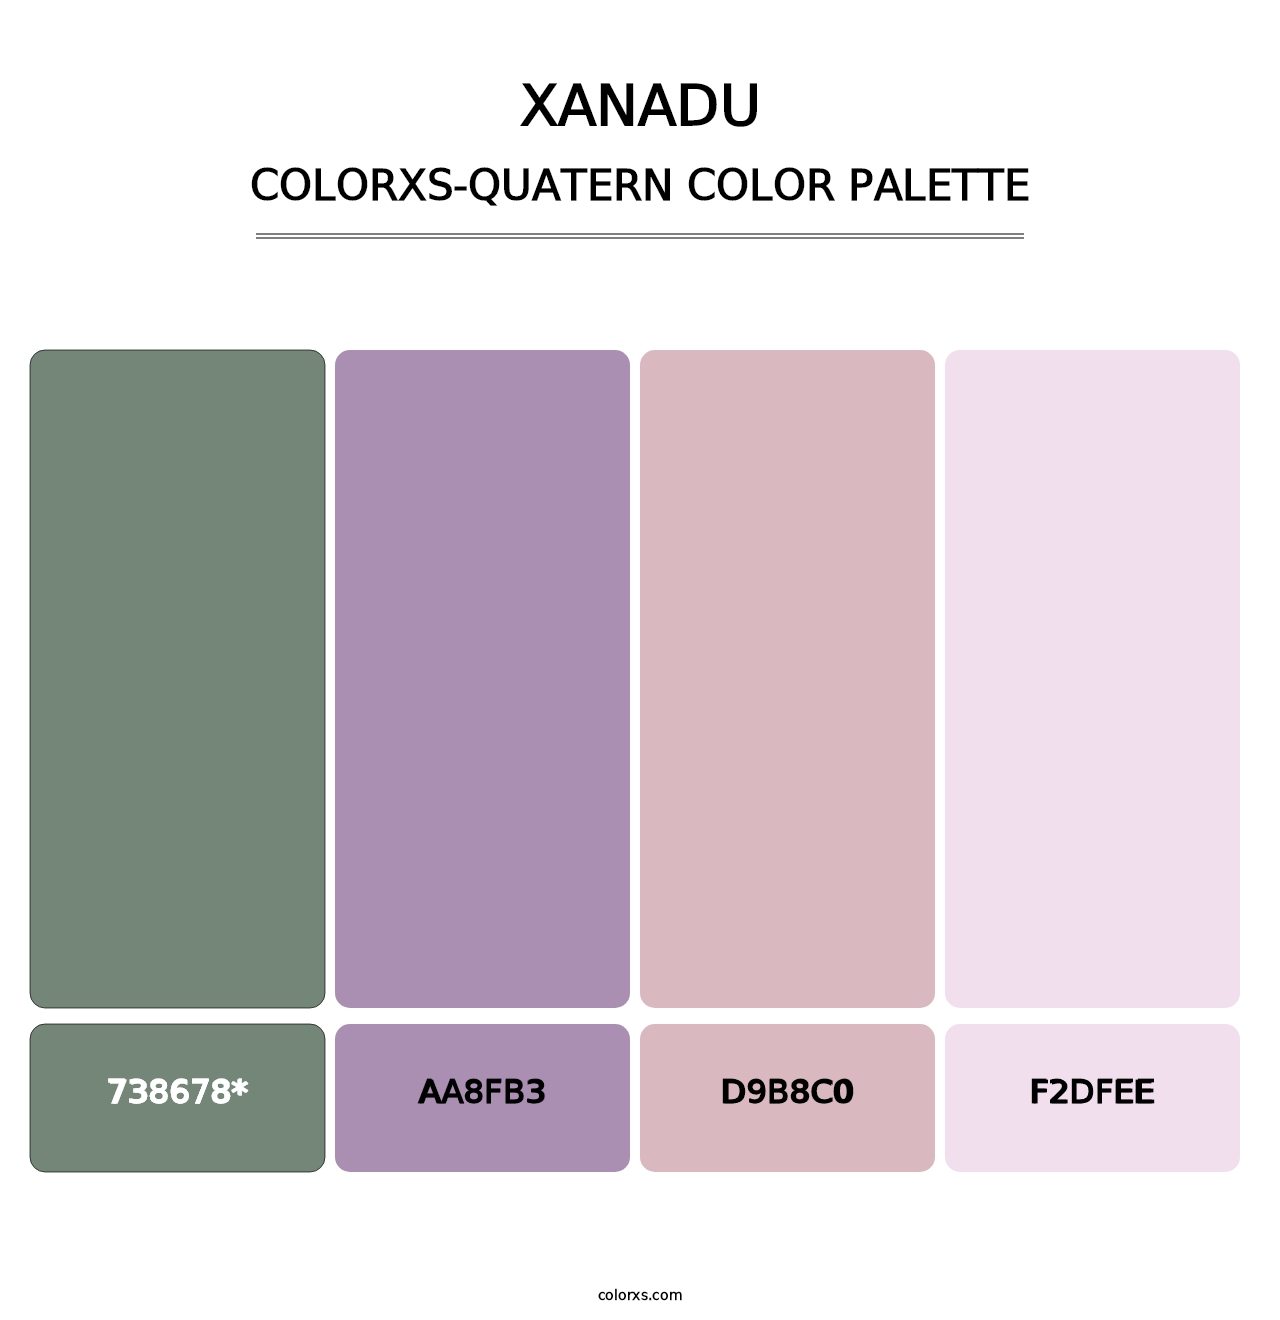 Xanadu - Colorxs Quatern Palette